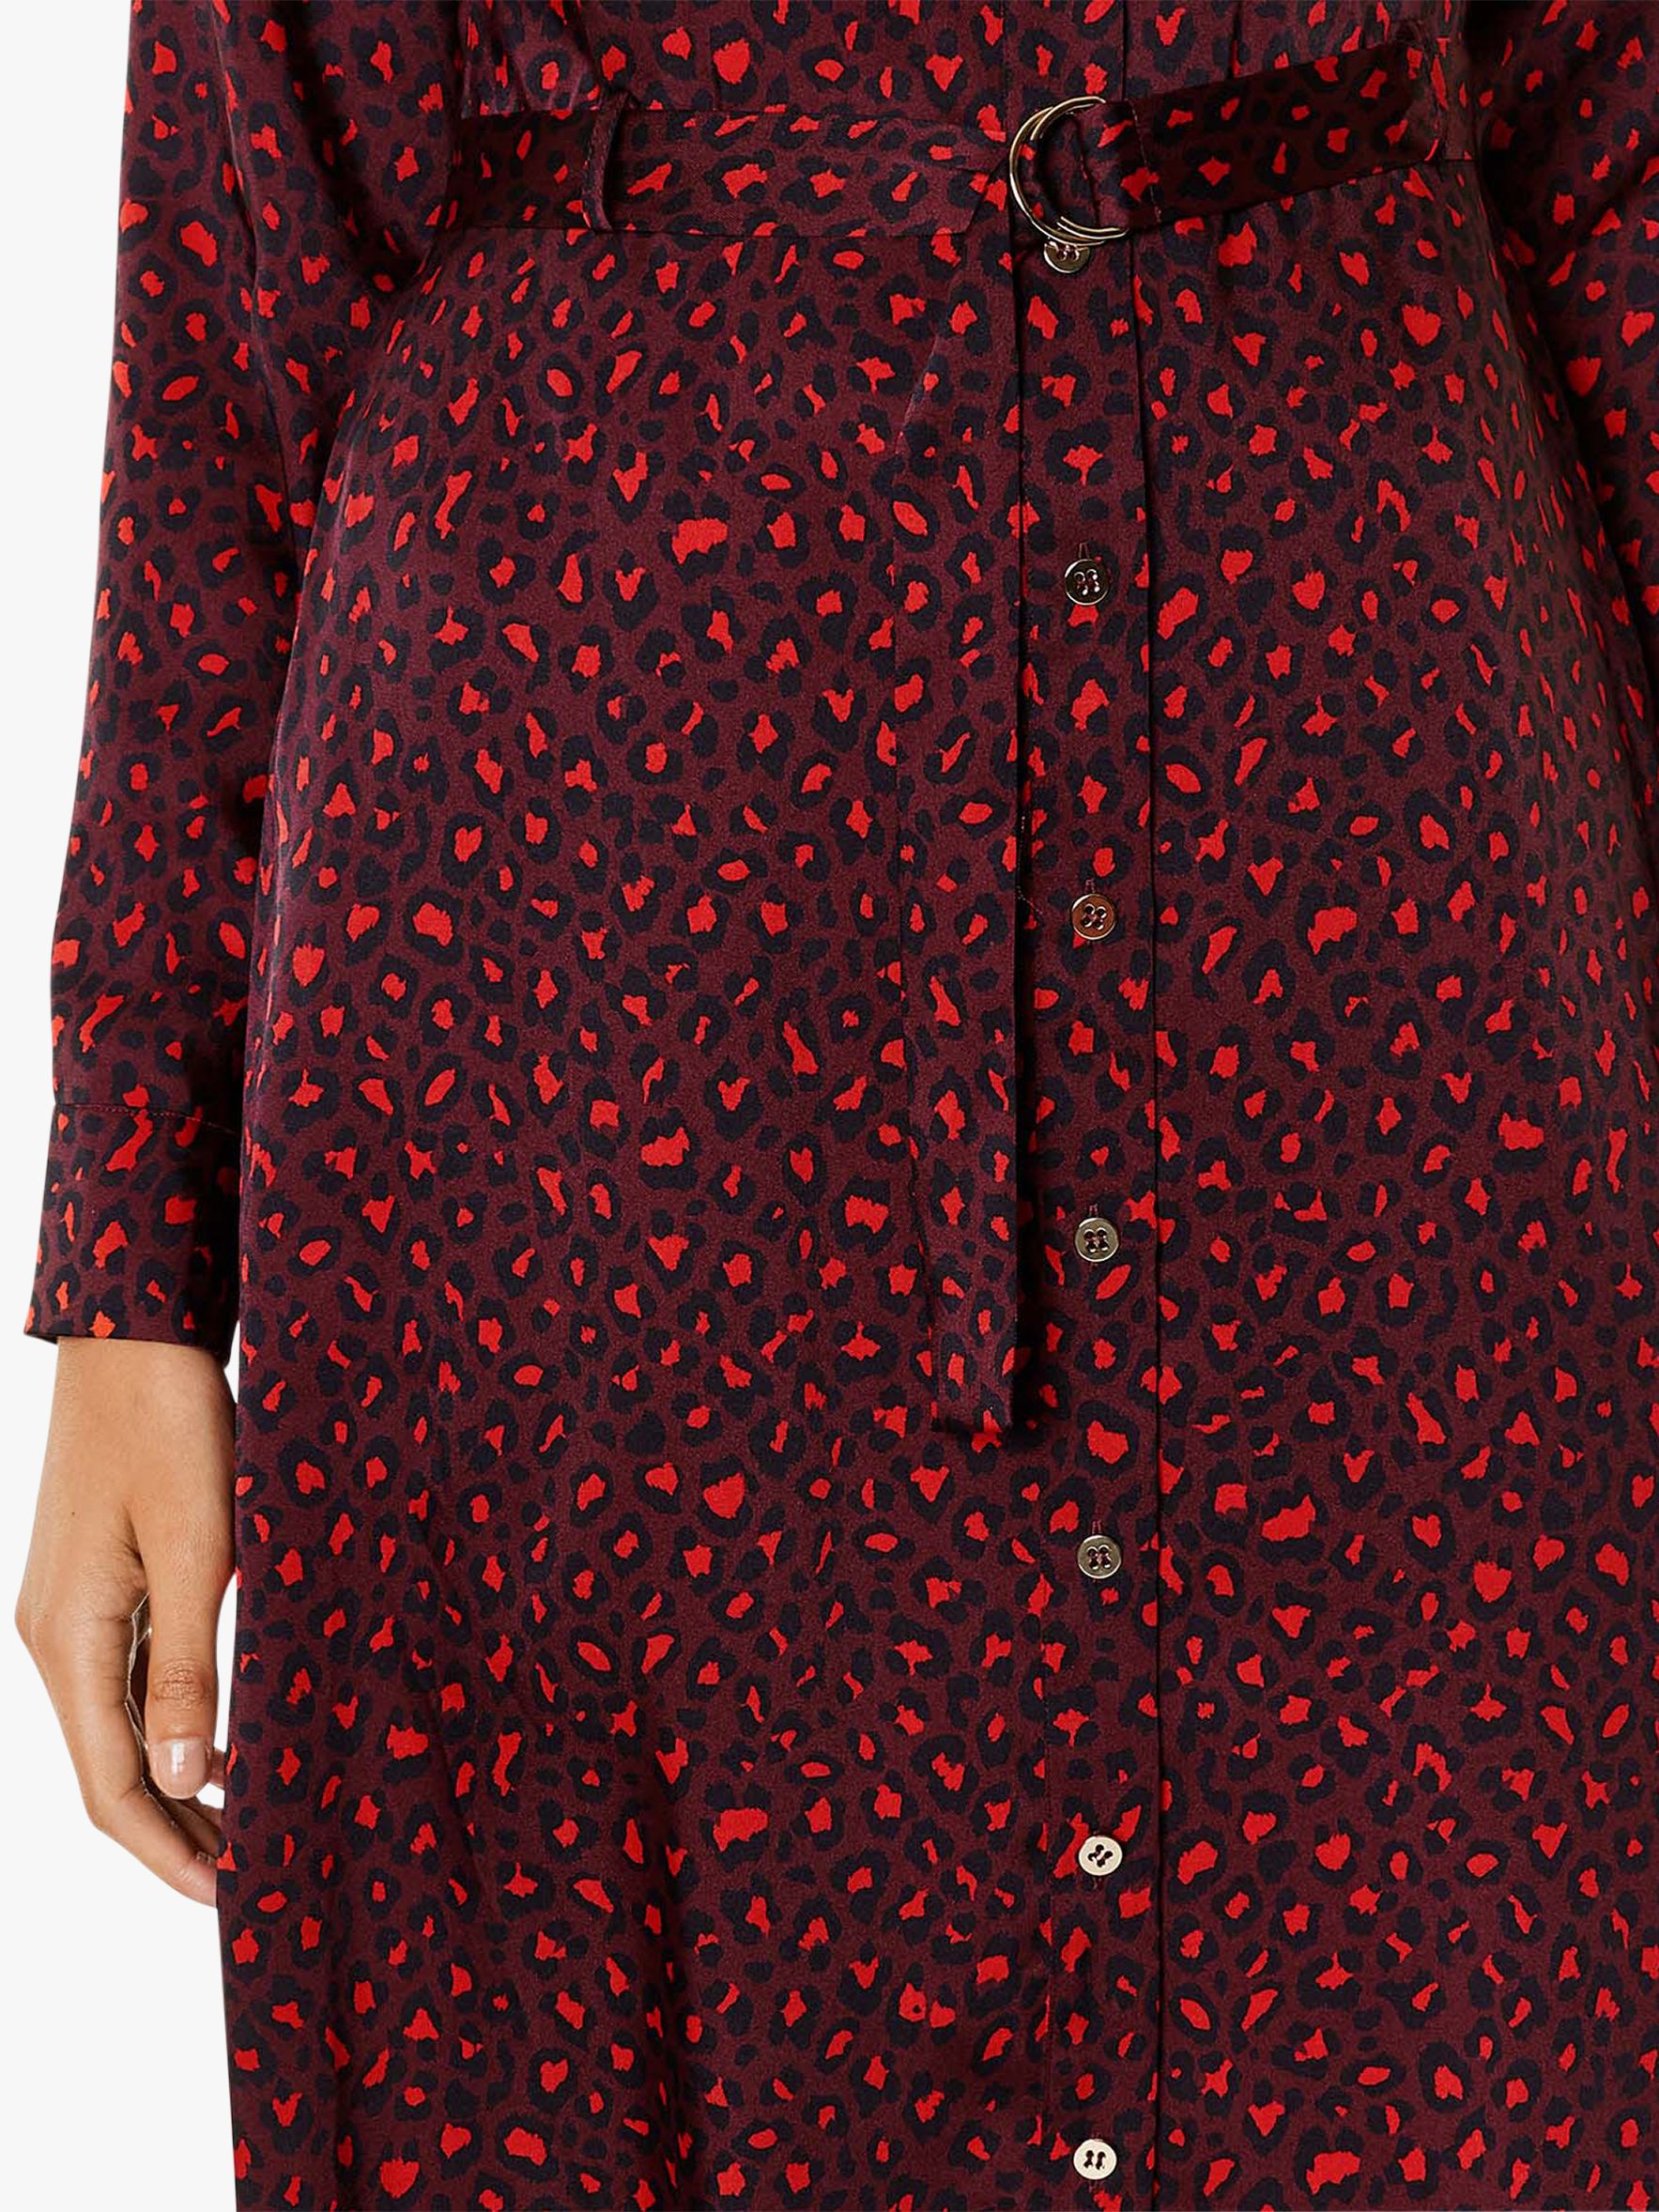 karen millen red leopard maxi dress